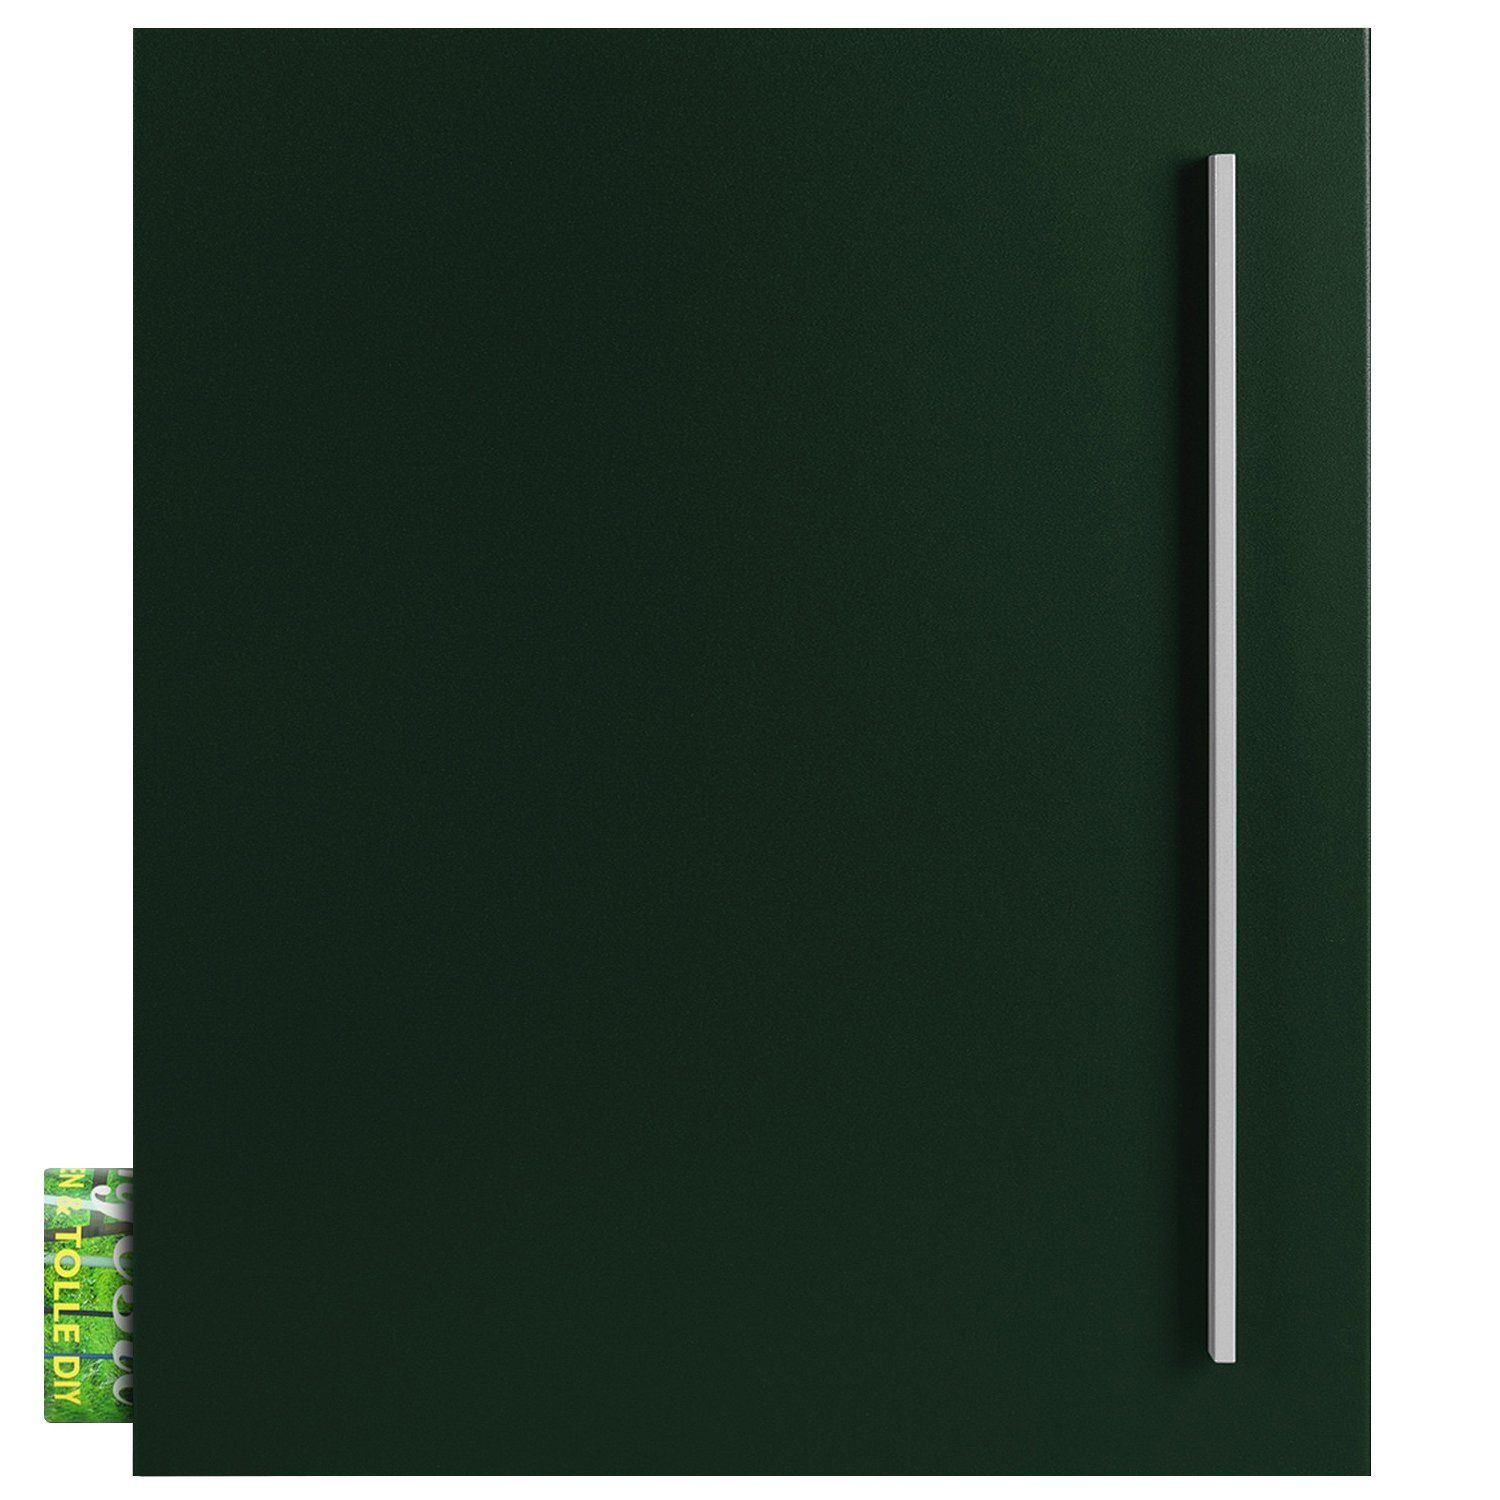 MOCAVI Briefkasten MOCAVI Box 110 Qualitäts-Briefkasten mit Zeitungsfach tannen-grün (RAL 6009), integriert; passender Verschluss (zusätzlich bestellbar) für Wetterseite, beidseitig nutzbar: Box Vers 1 VA